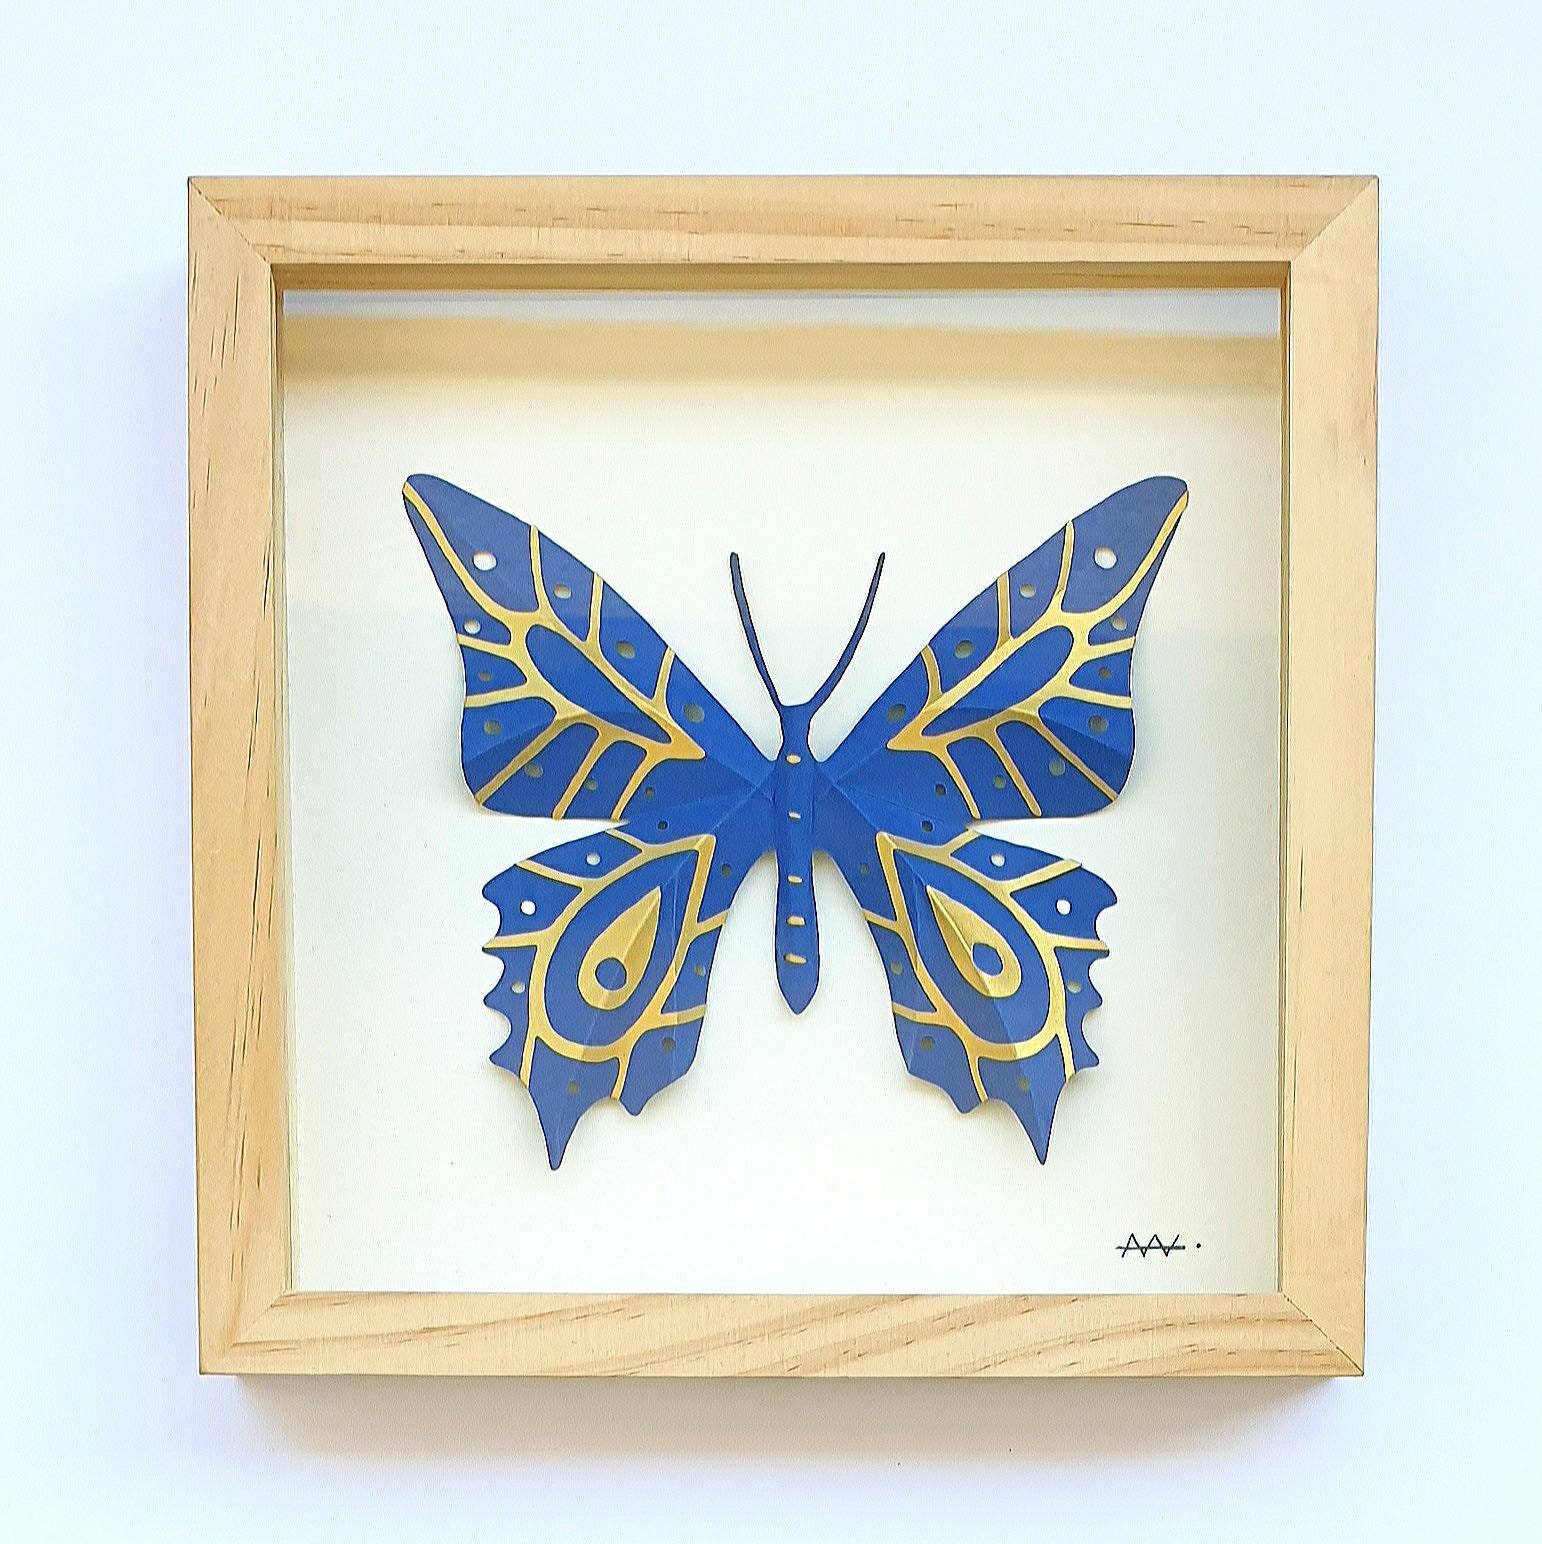 Creatcabin 1 lot de grands papillons décoratifs muraux 3D